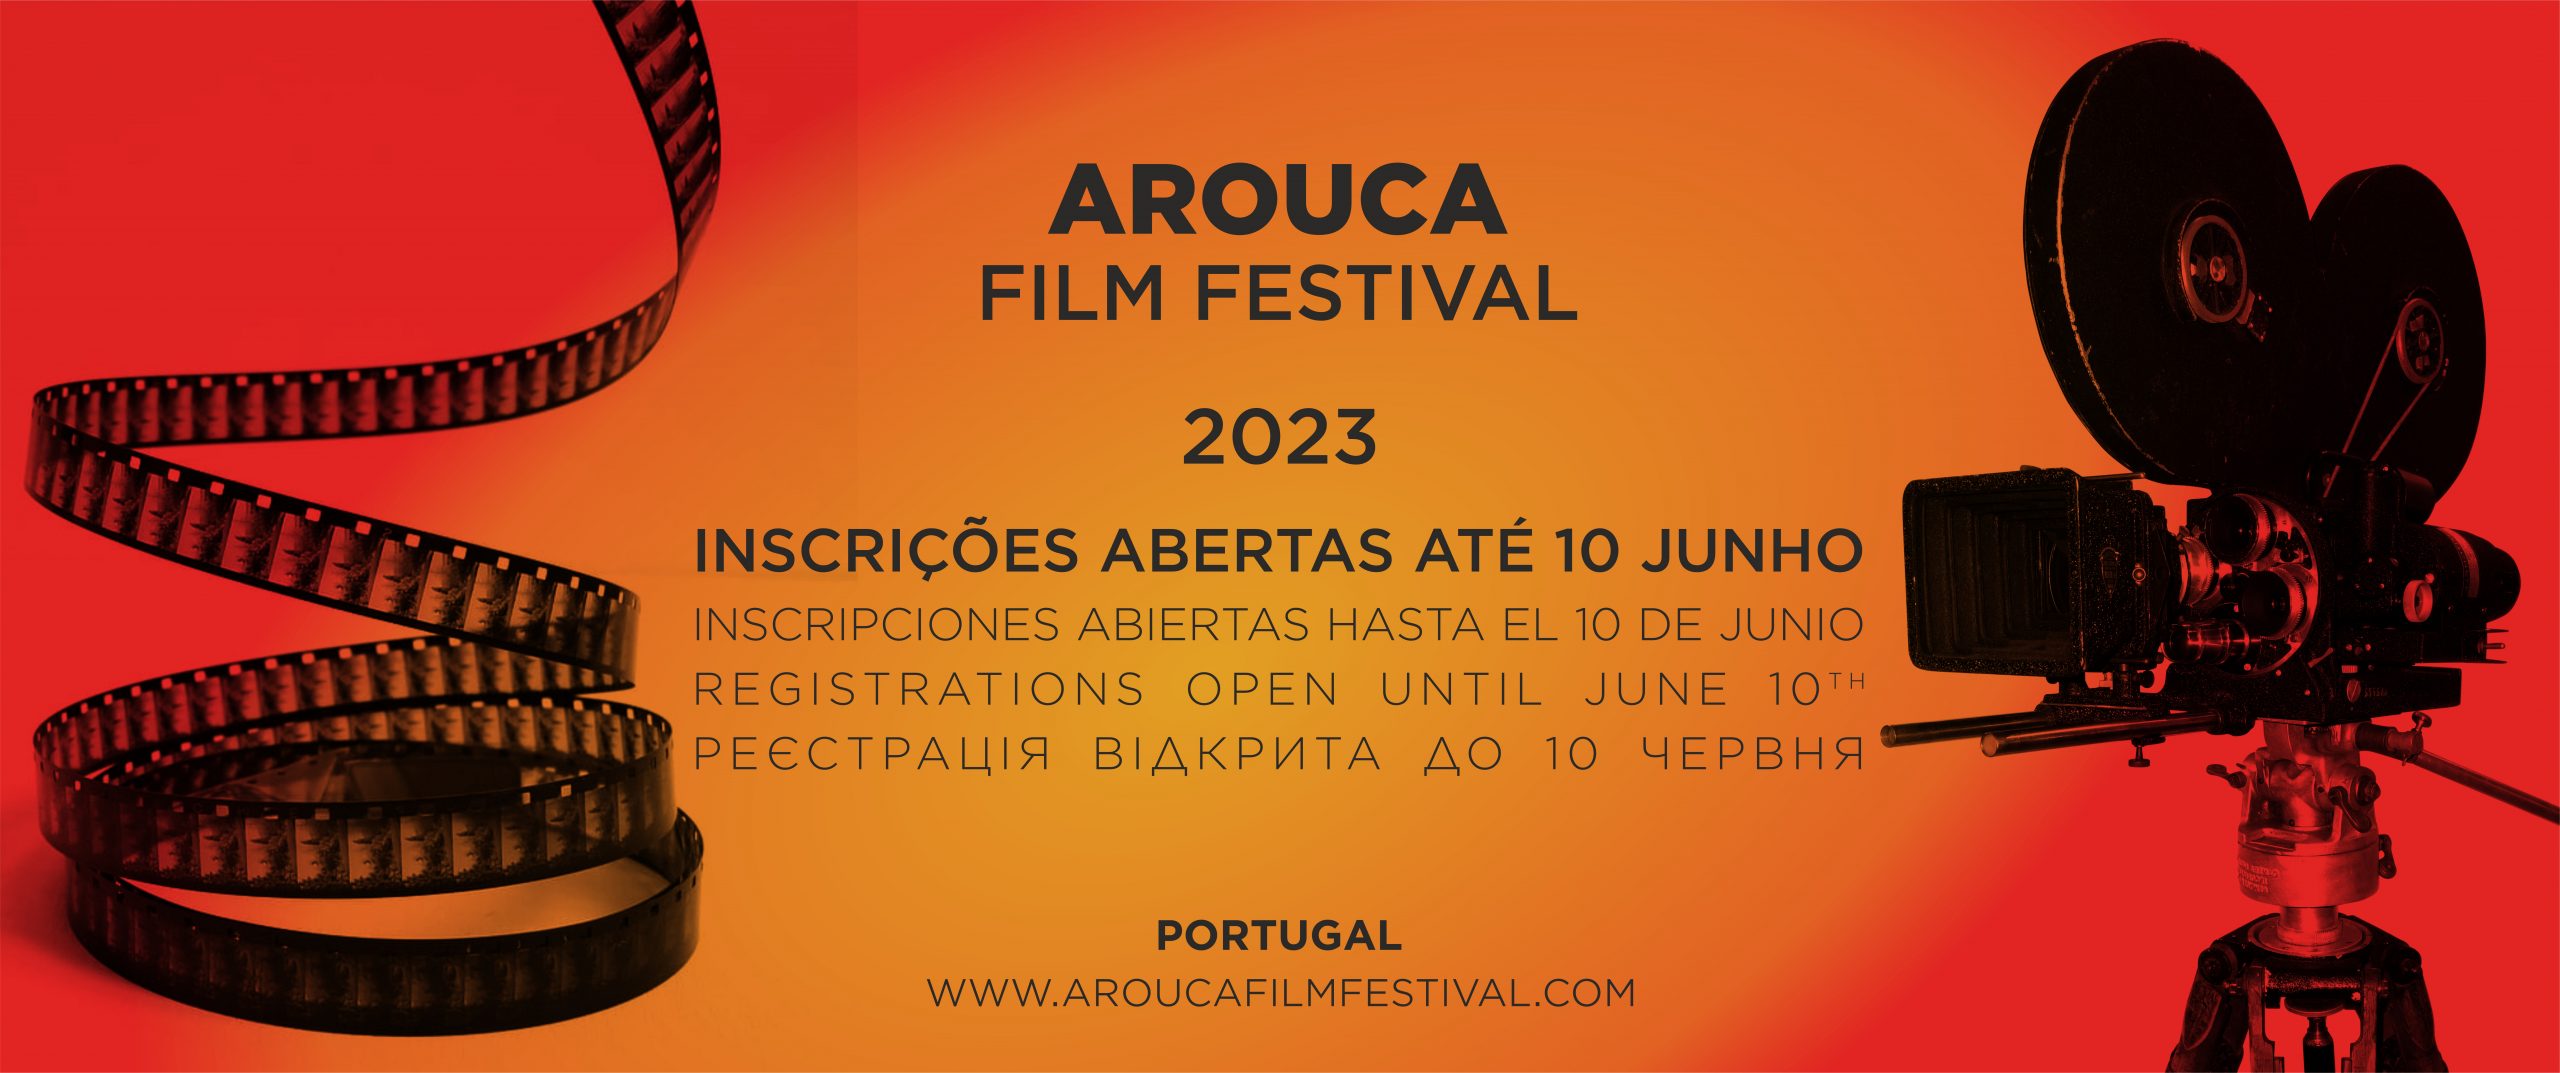 Datas para Inscrições Arouca Film Festival 2023